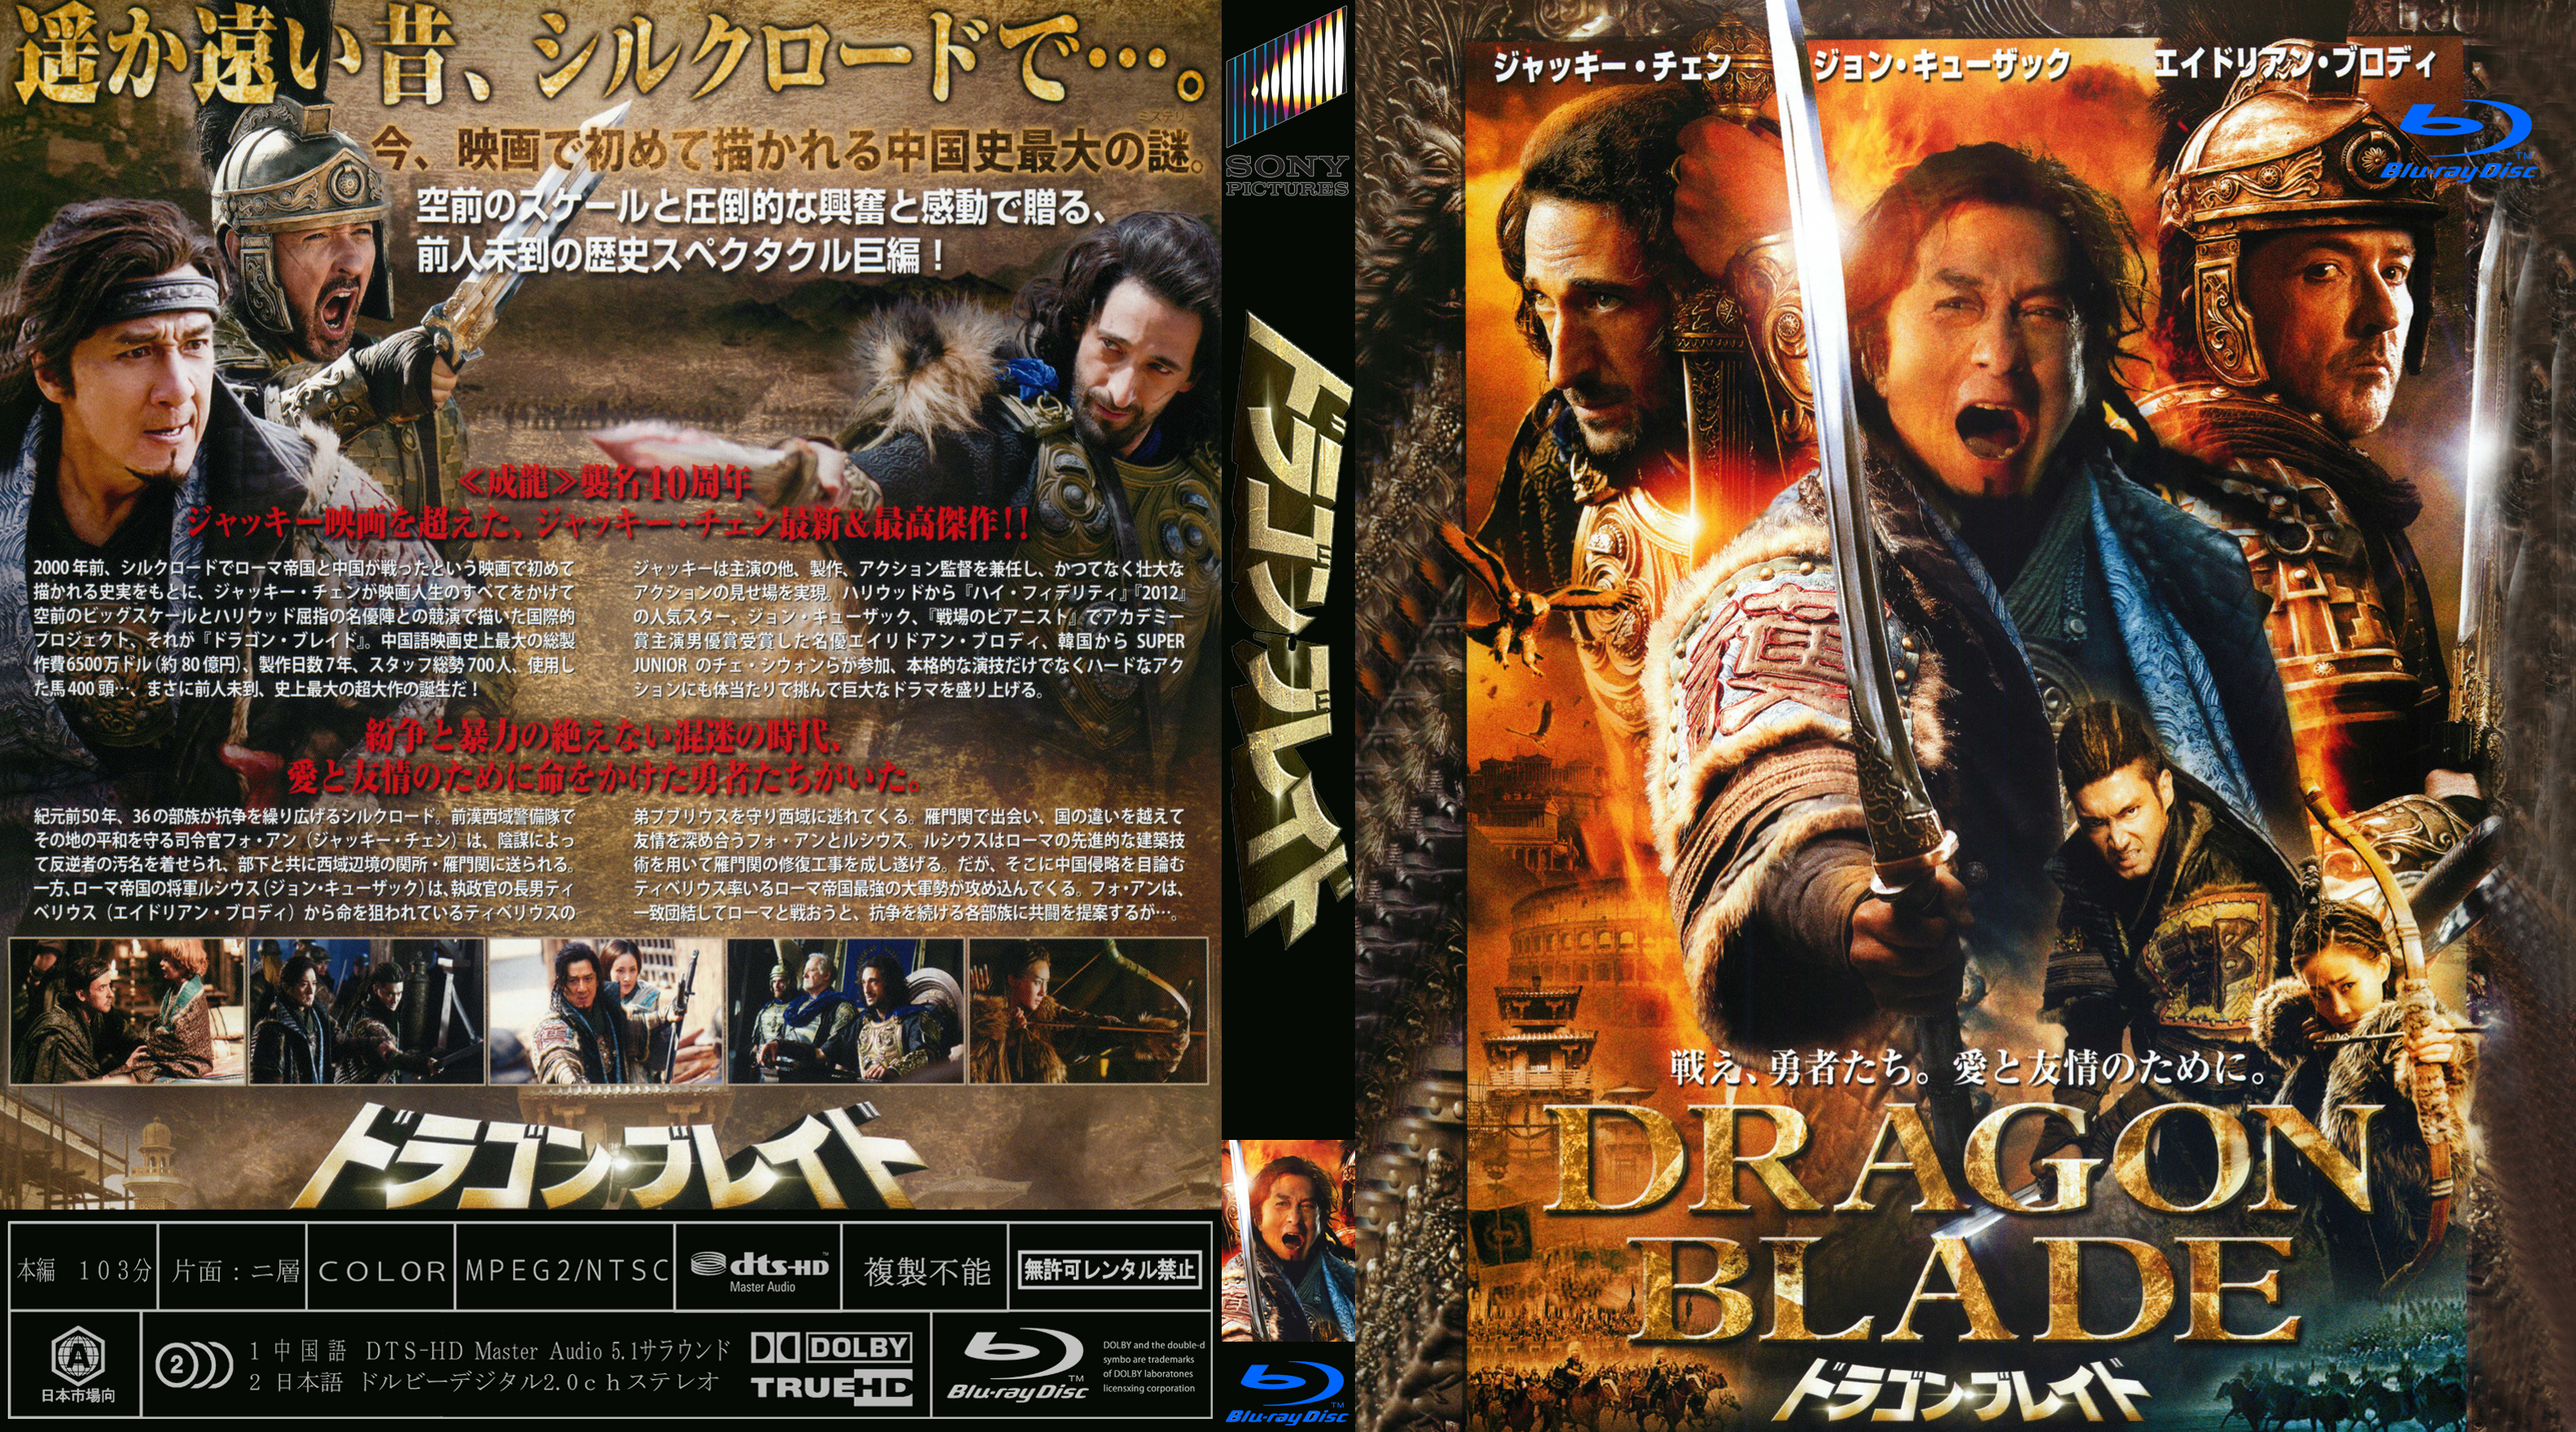 ドラゴン・ブレイド DVD www.krzysztofbialy.com